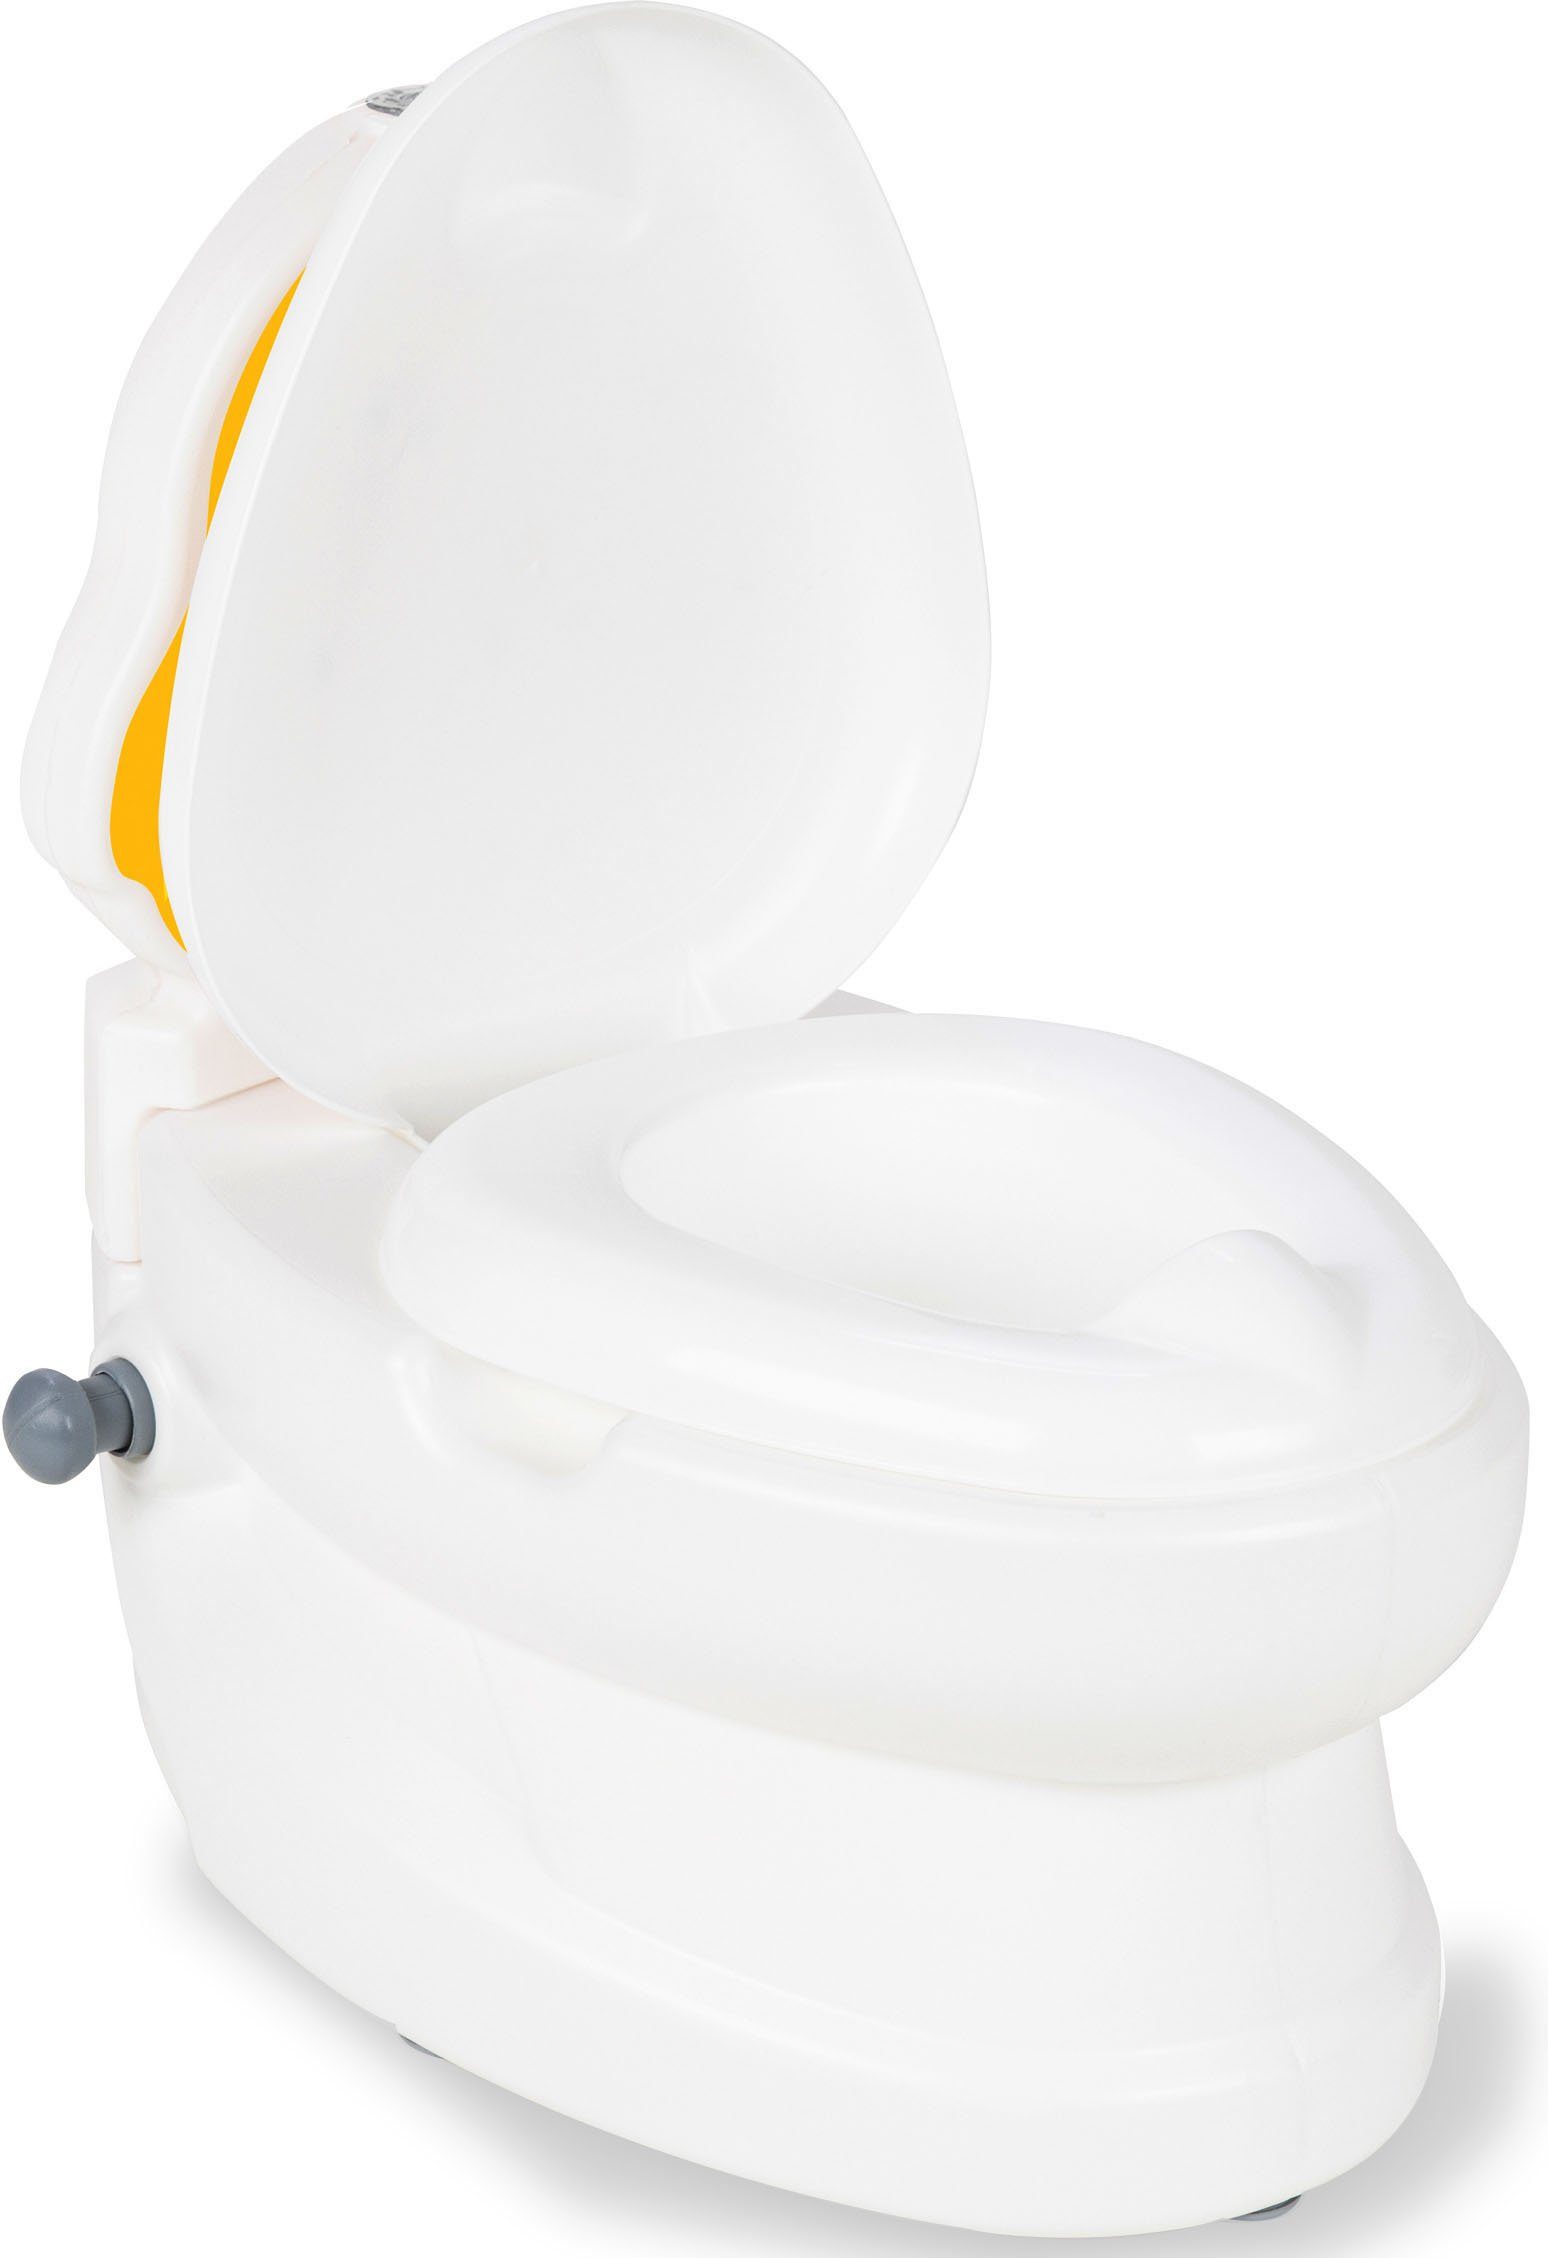 Küken, separat zur Meine kleine werden mit Reinigung Jamara Toilettenpapierhalter, kann Toilette, Toilettentrainer Spülsound und herausgenommen Behältnis